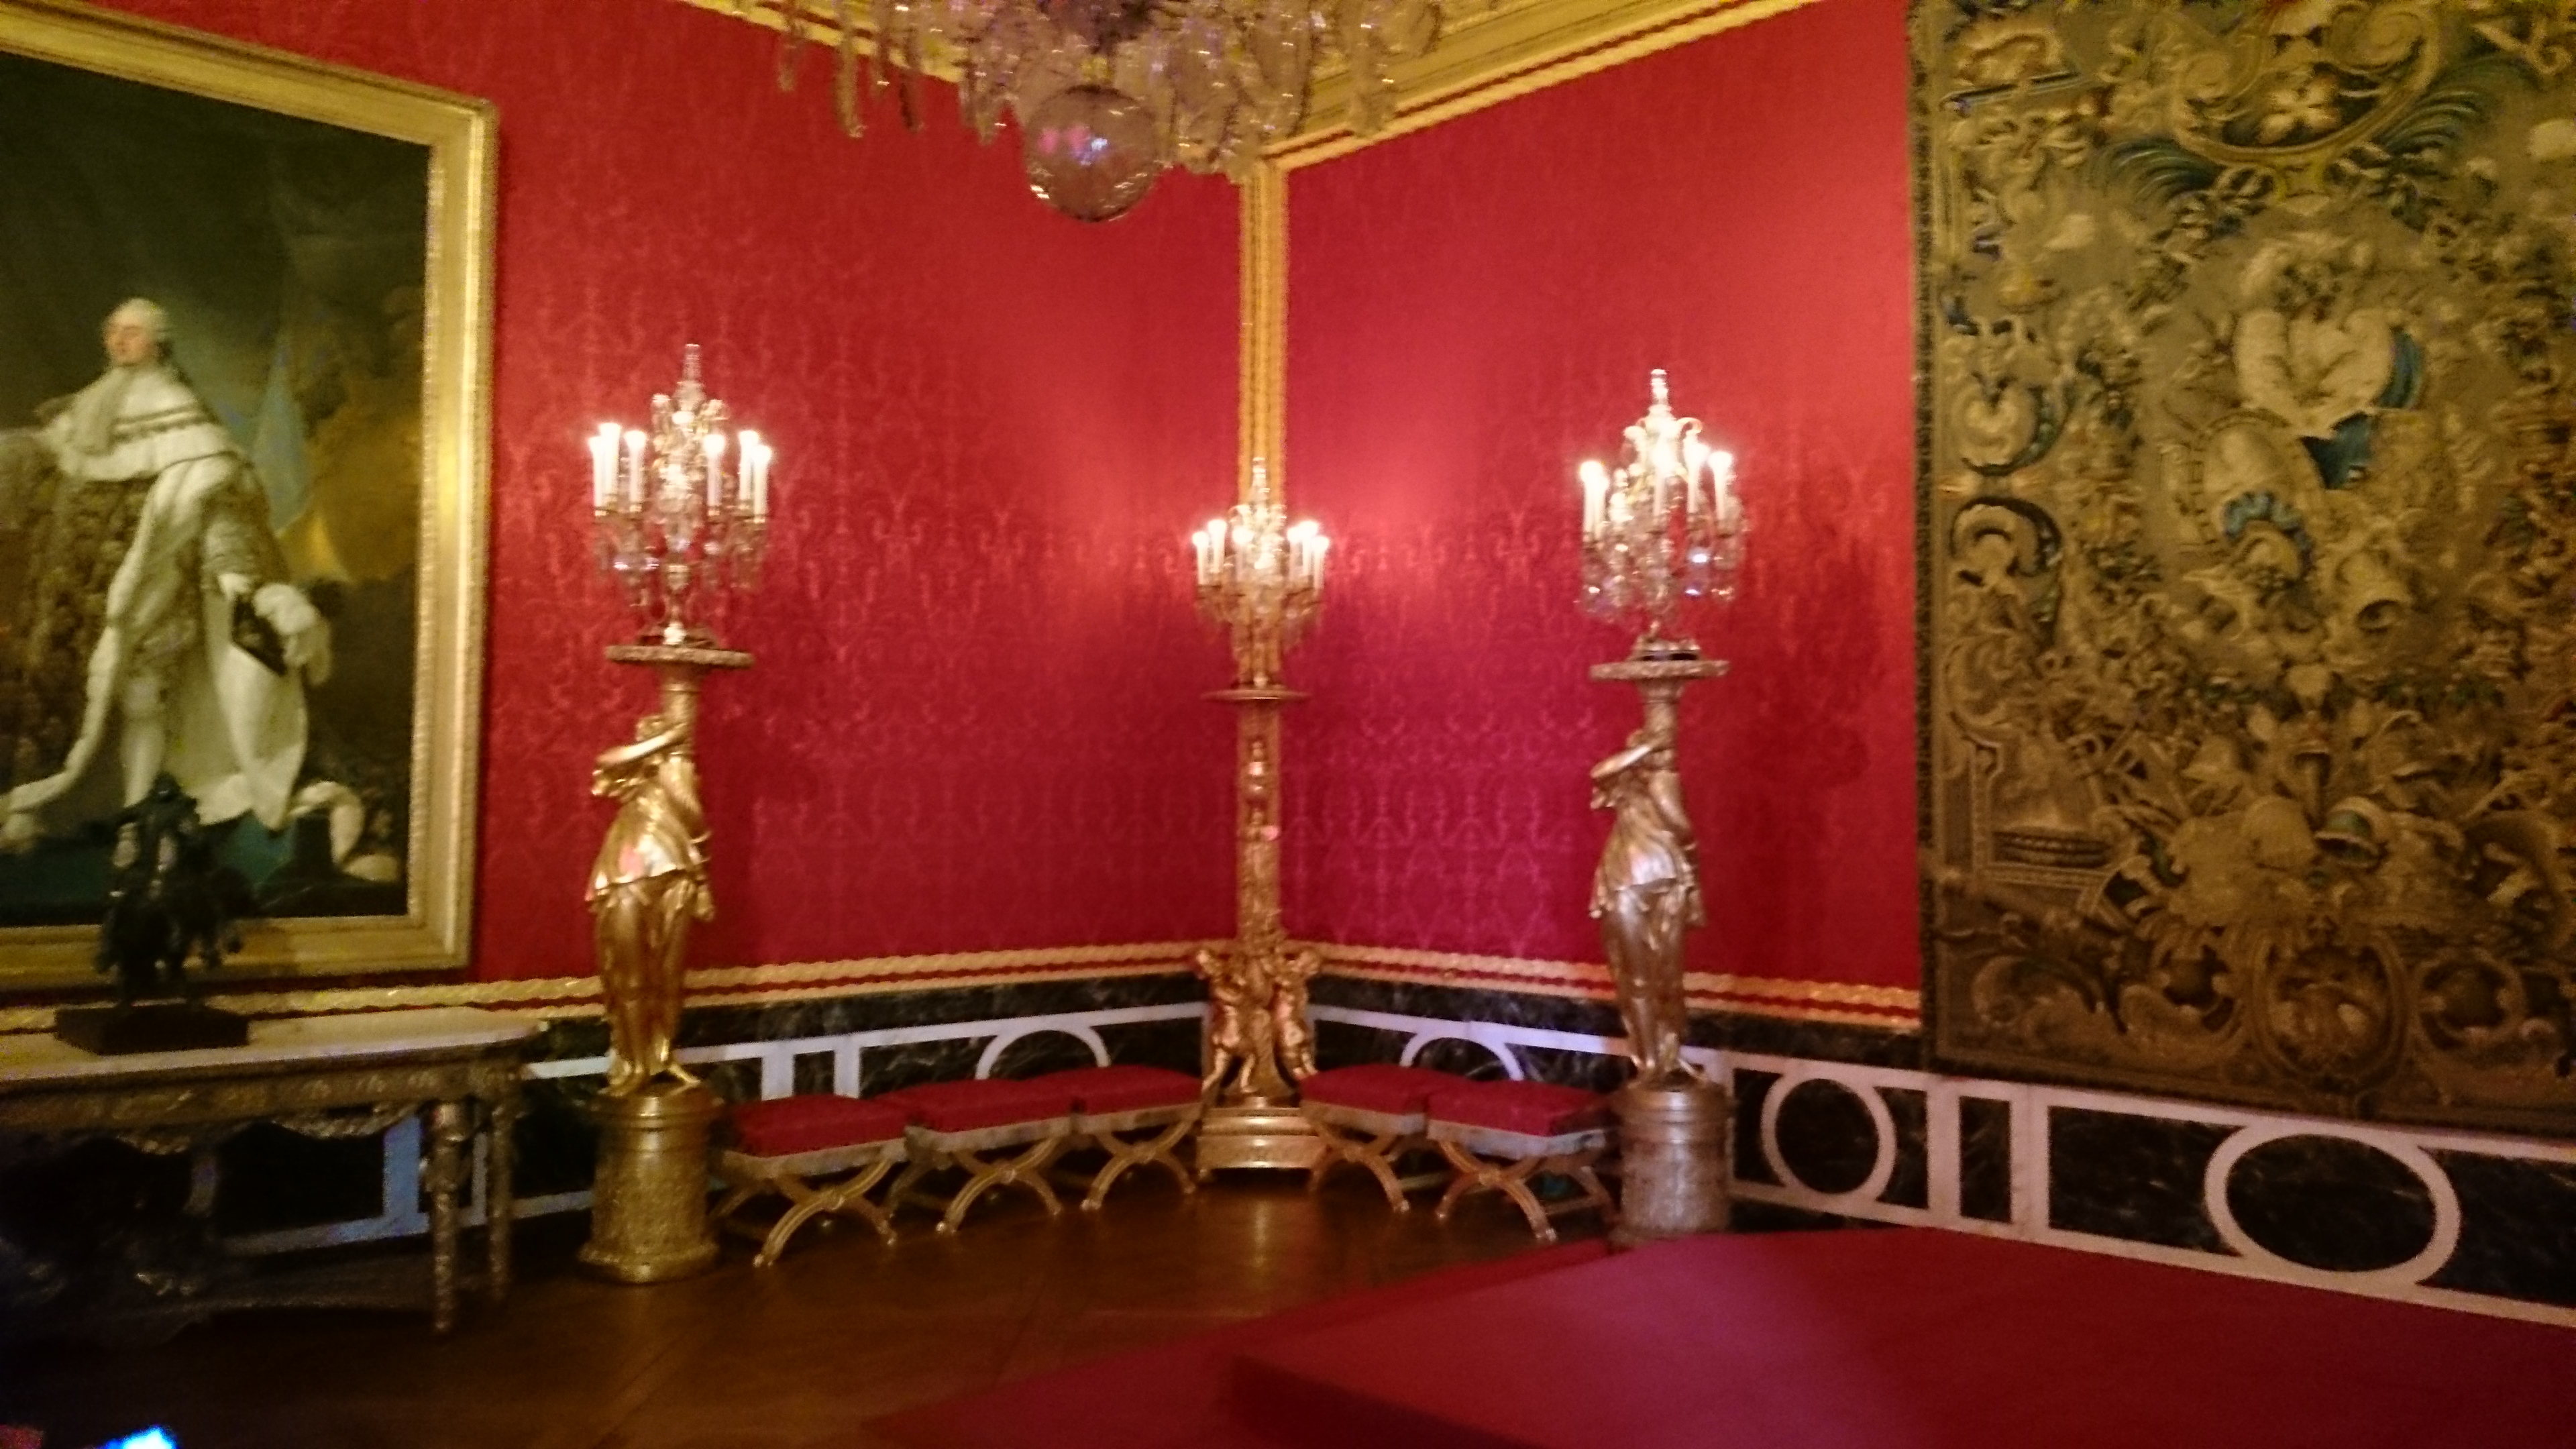 dsc 13571 - Visita al Palacio de Versalles: Como ir, cuanto cuesta y tips III/III